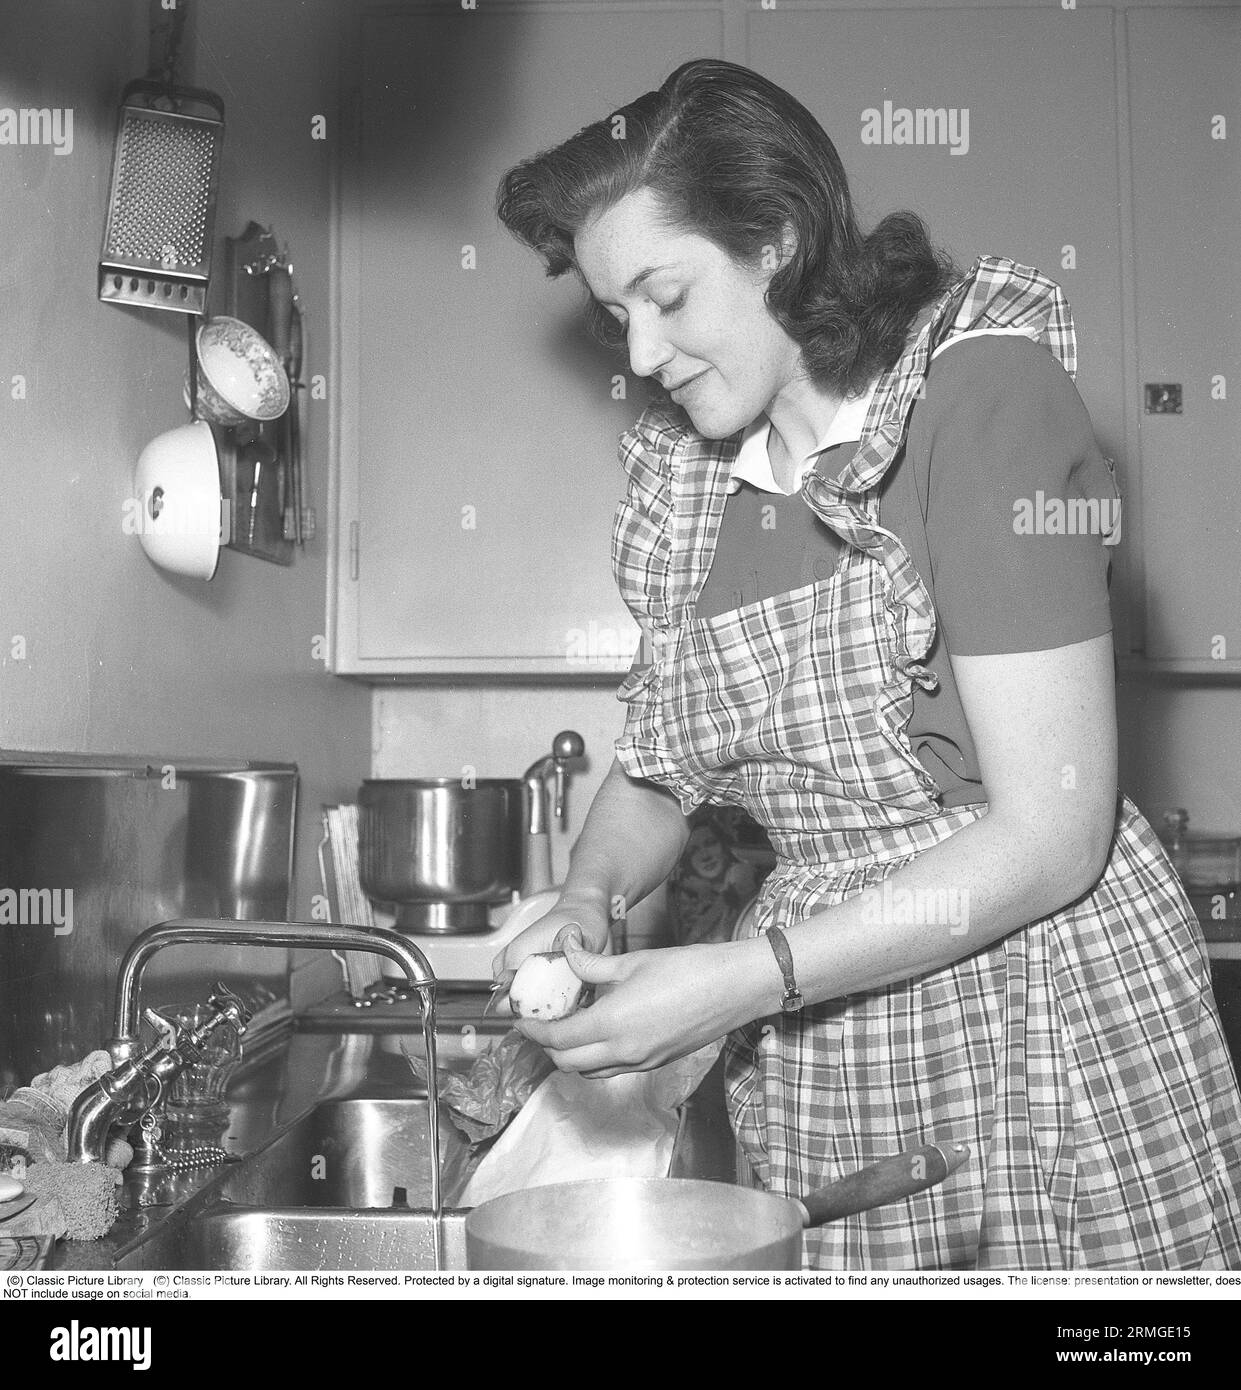 Negli anni '1940 Una donna in una tipica cucina degli anni '1940 con i dettagli degli interni e gli oggetti che sono molto rappresentativi del decennio. Un assistente di casa, una macchina da cucina, è un apparecchio elettrico la cui funzione di base è di mescolare e lavorare l'impasto ed è visto in piedi sul banco. In realtà, l'assistente domestico è una parola di marca presa dal modello Electrolux chiamato Assistant. Electrolux ha registrato la parola Assistant come marchio. A differenza, ad esempio, dei robot da cucina e delle frustate elettriche, la lavorazione in un assistente avviene a una velocità significativamente inferiore, che è un prer Foto Stock